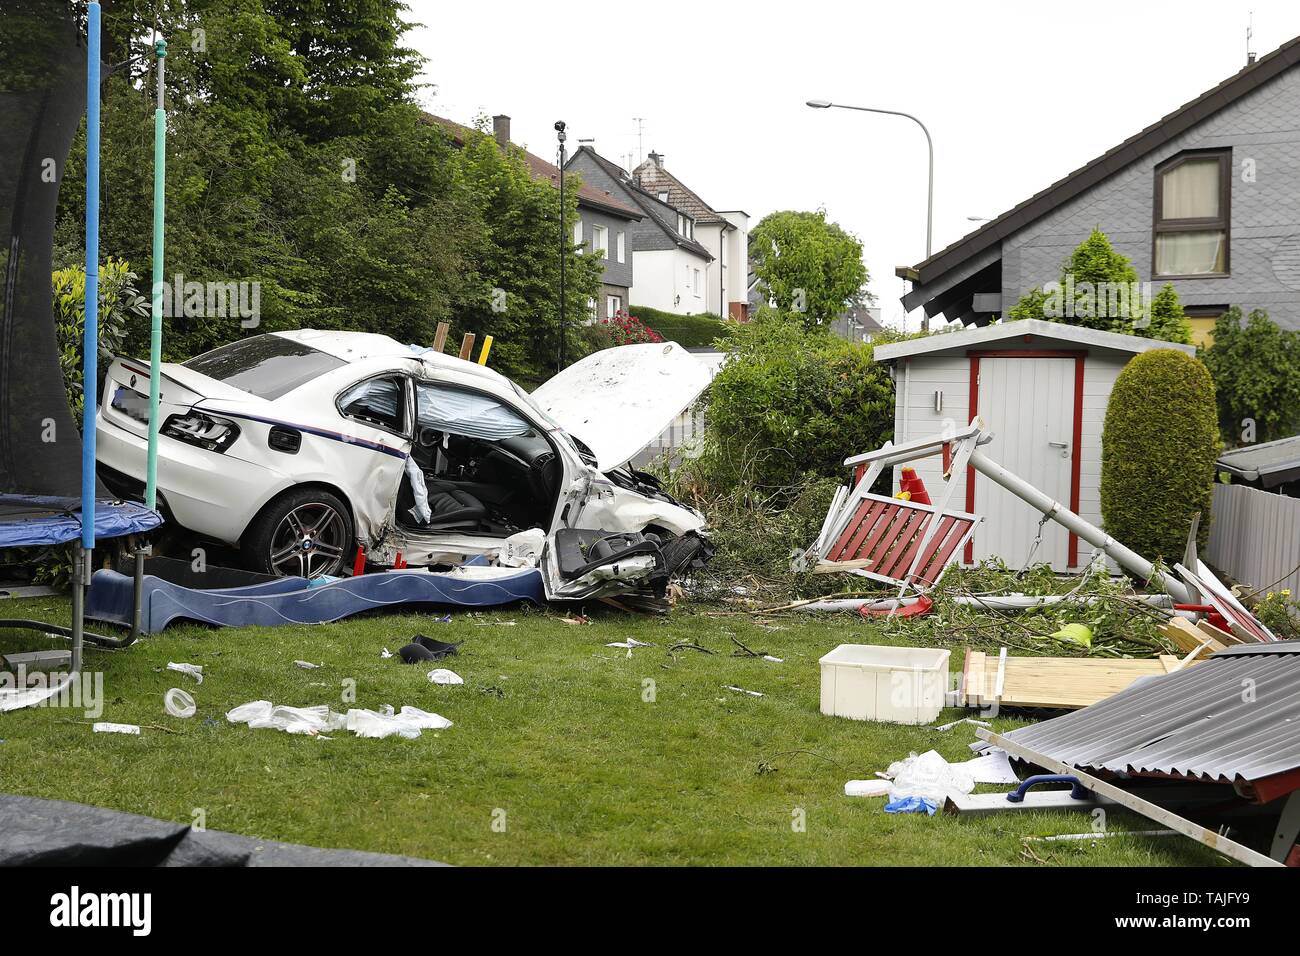 25 mai 2019, en Rhénanie du Nord-Westphalie, Remscheid : une voiture  accidentée est stationné dans un jardin après un accident. Le 19-year-old  co-pilote est mort dans l'accident de voiture. Selon la police,